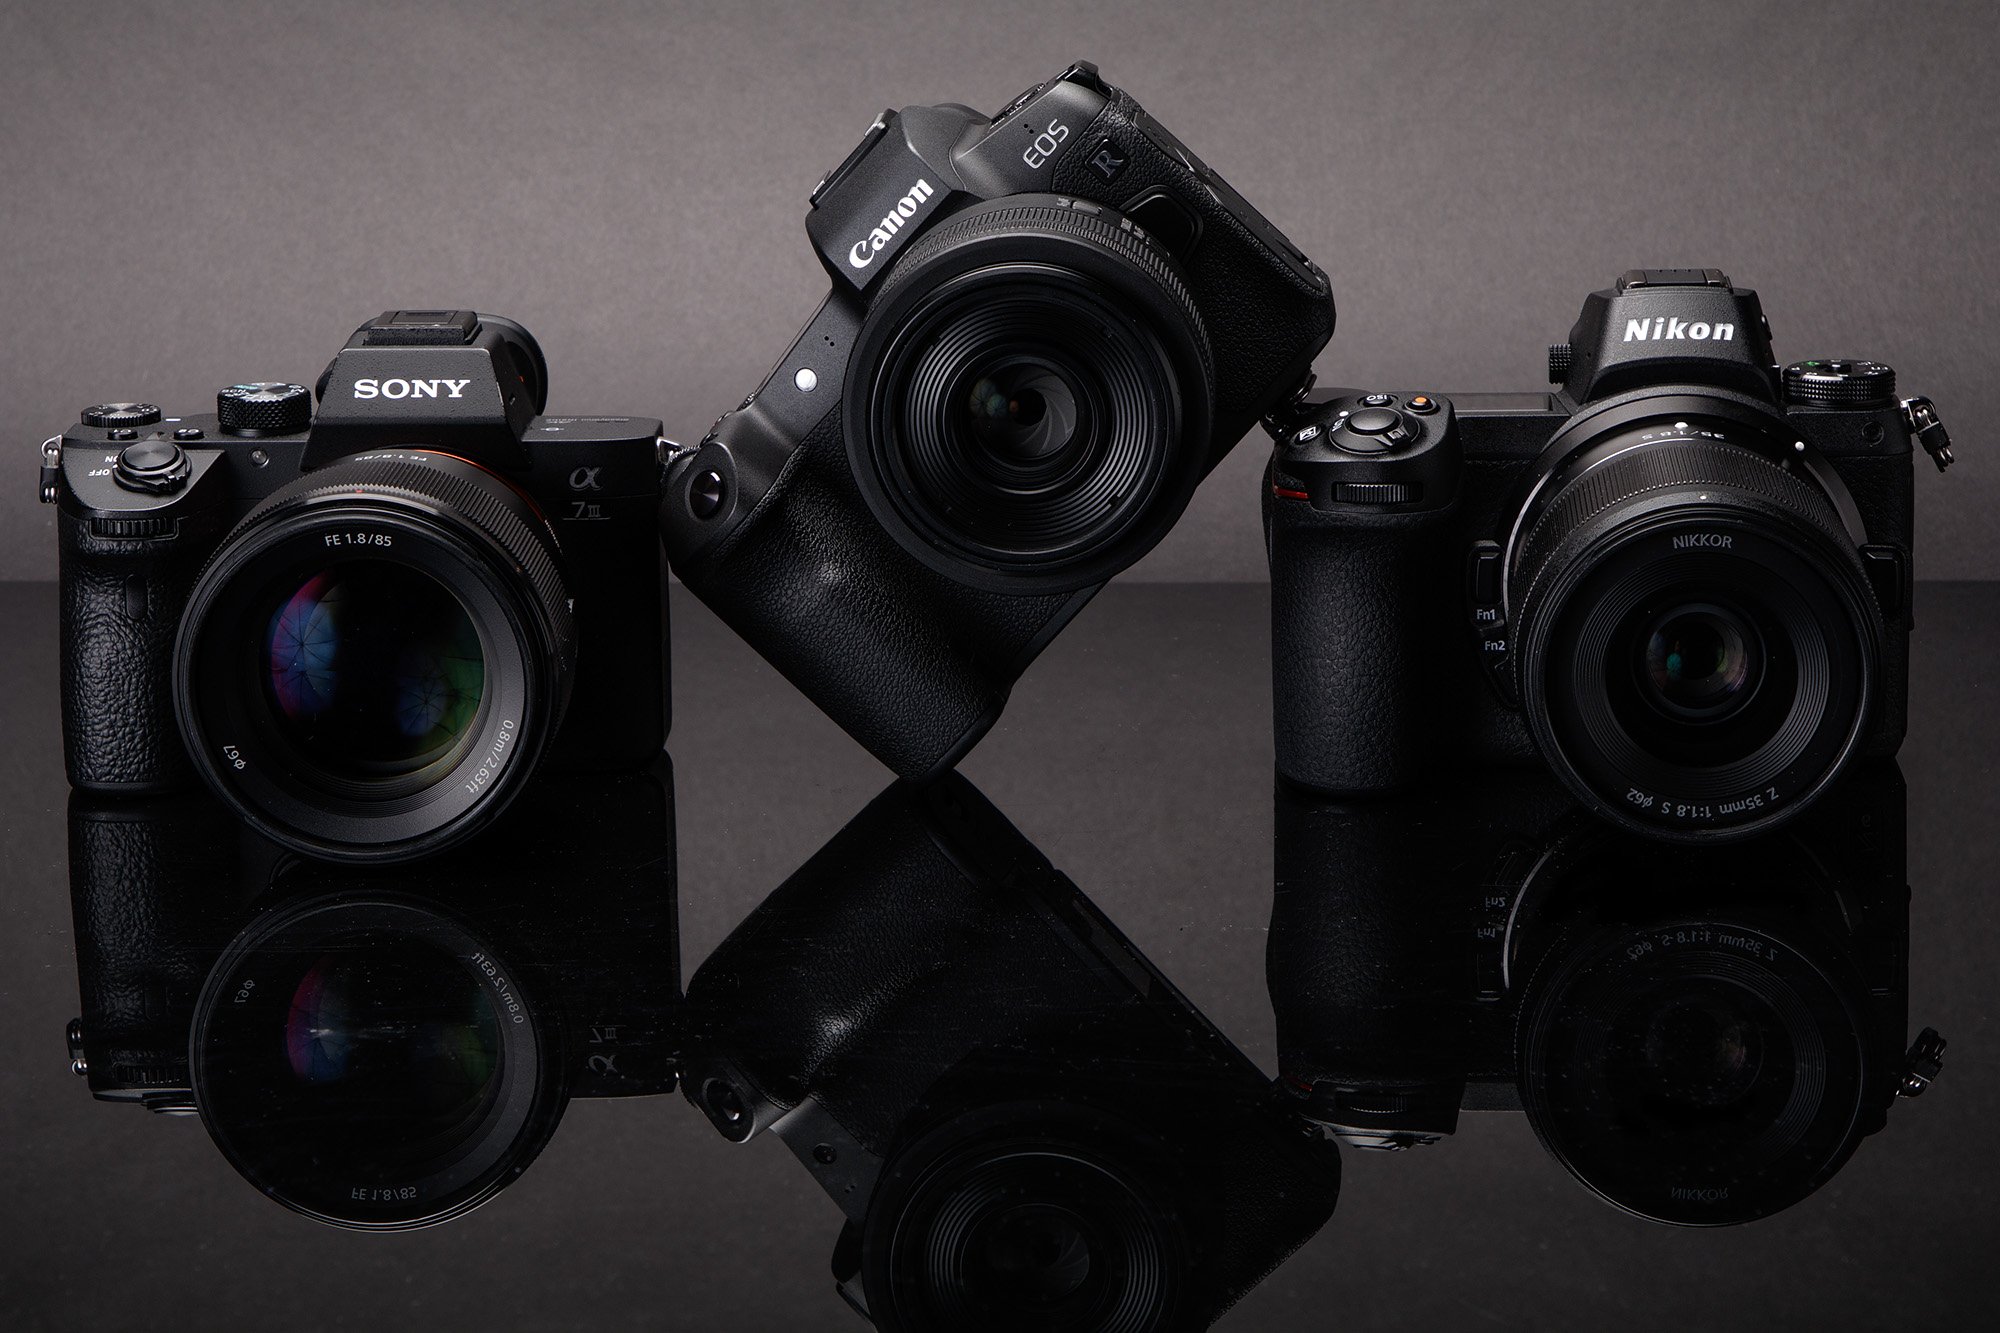 Báo cáo cho biết Sony dẫn đầu sản xuất máy ảnh mirrorless trong năm 2020